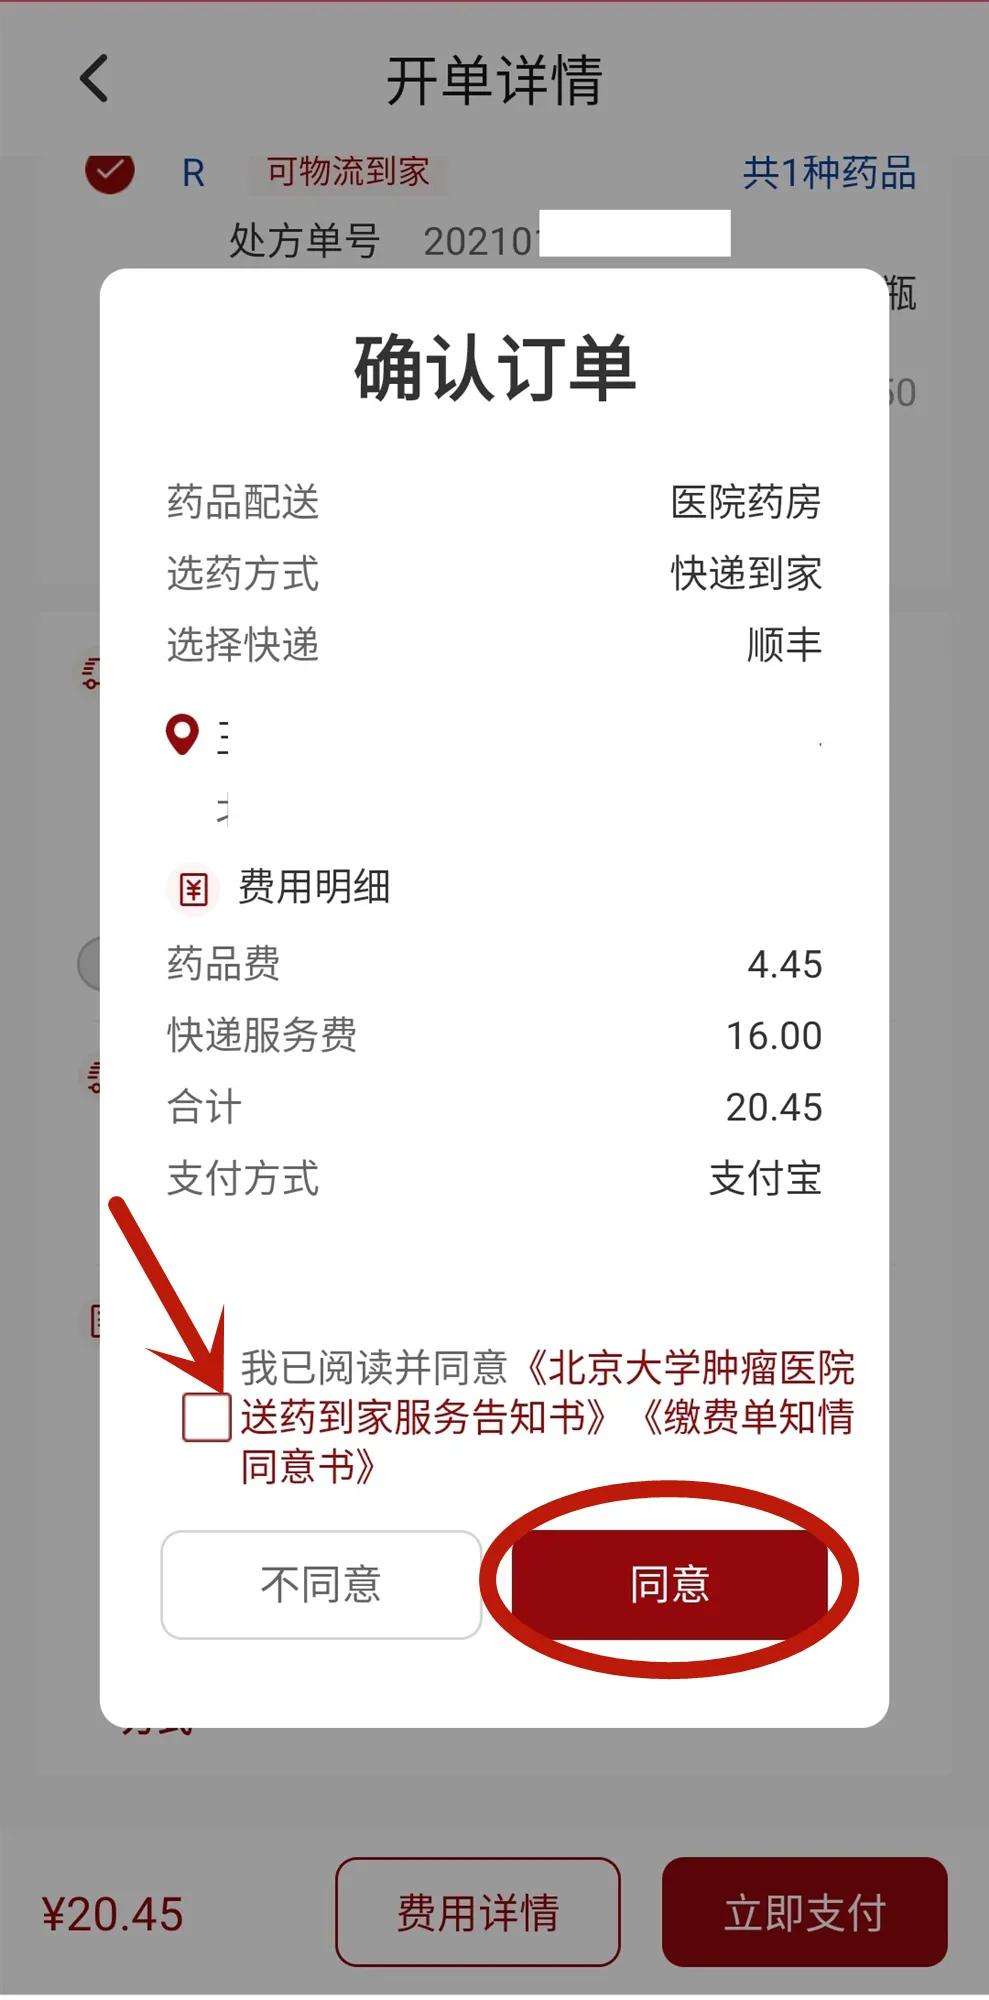 北京大学肿瘤医院号贩子挂号电话,欢迎咨询联系方式行业领先的简单介绍